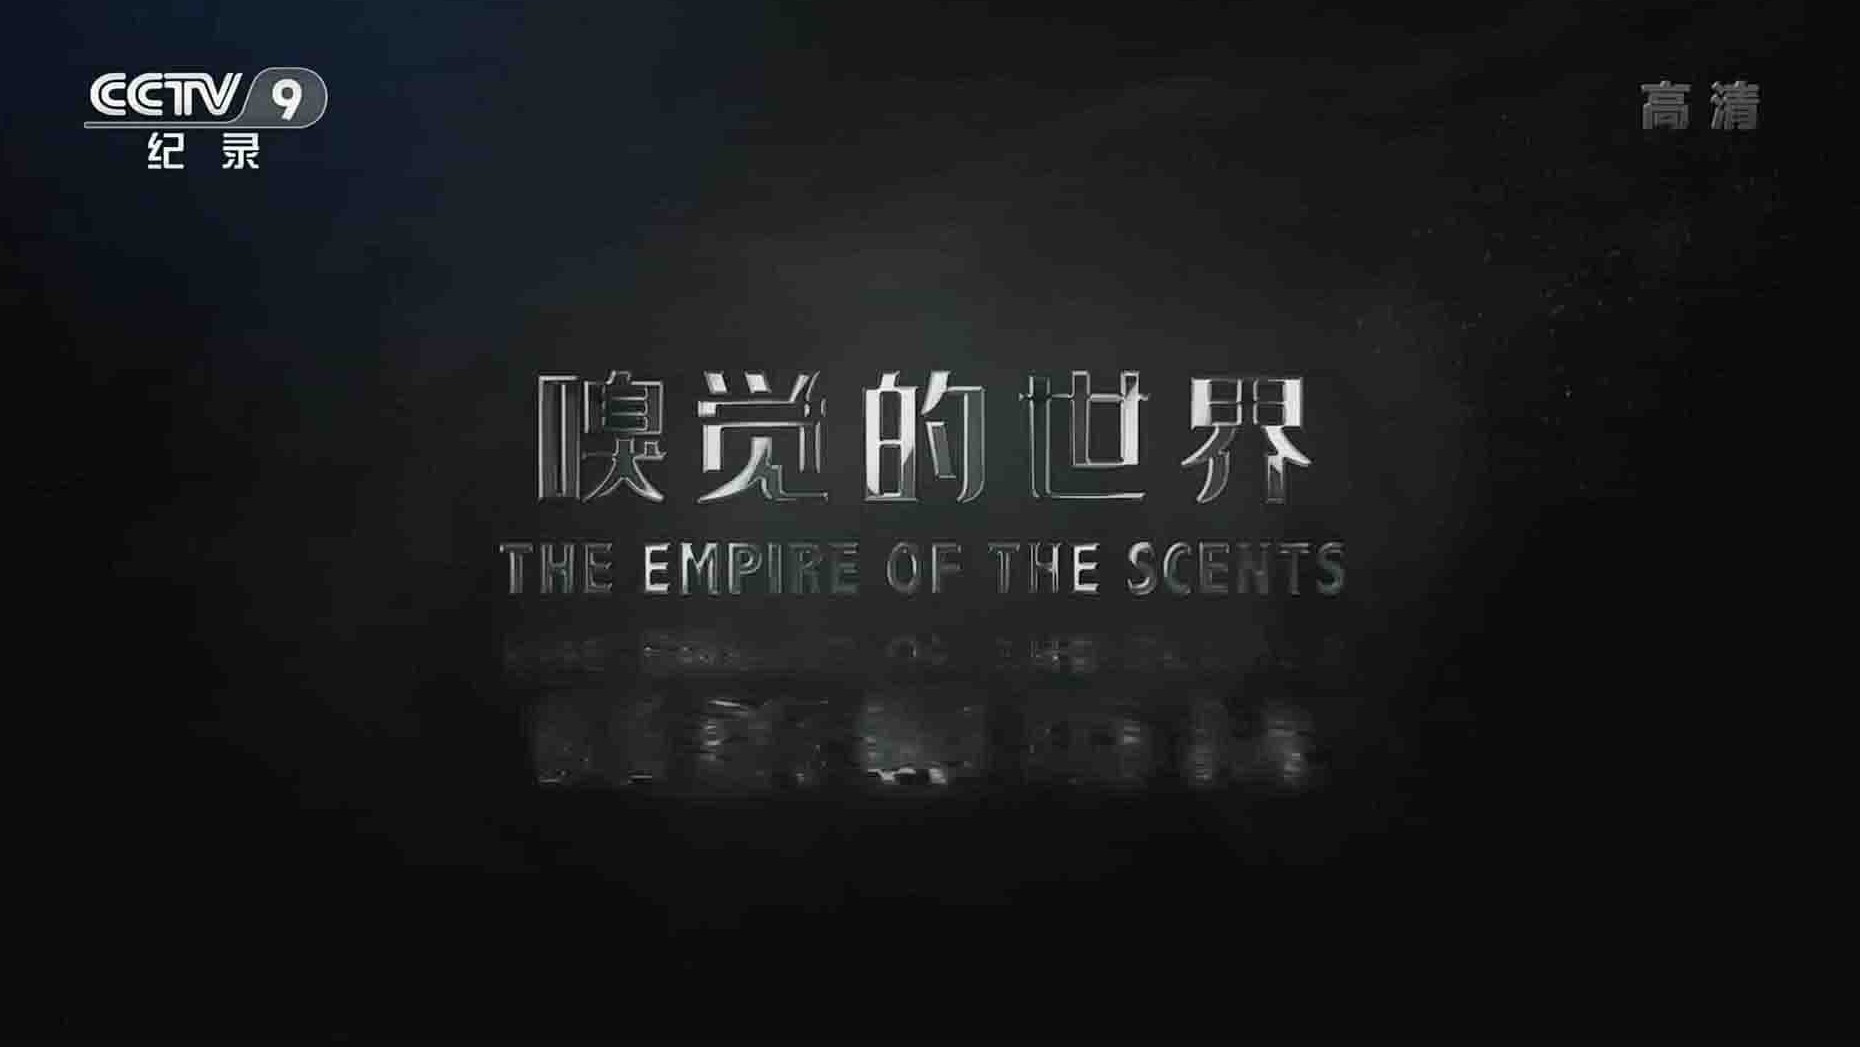 加拿大纪录片《嗅觉的世界 The Empire of Scents 2014》全1集 国语中字  1080i高清网盘下载